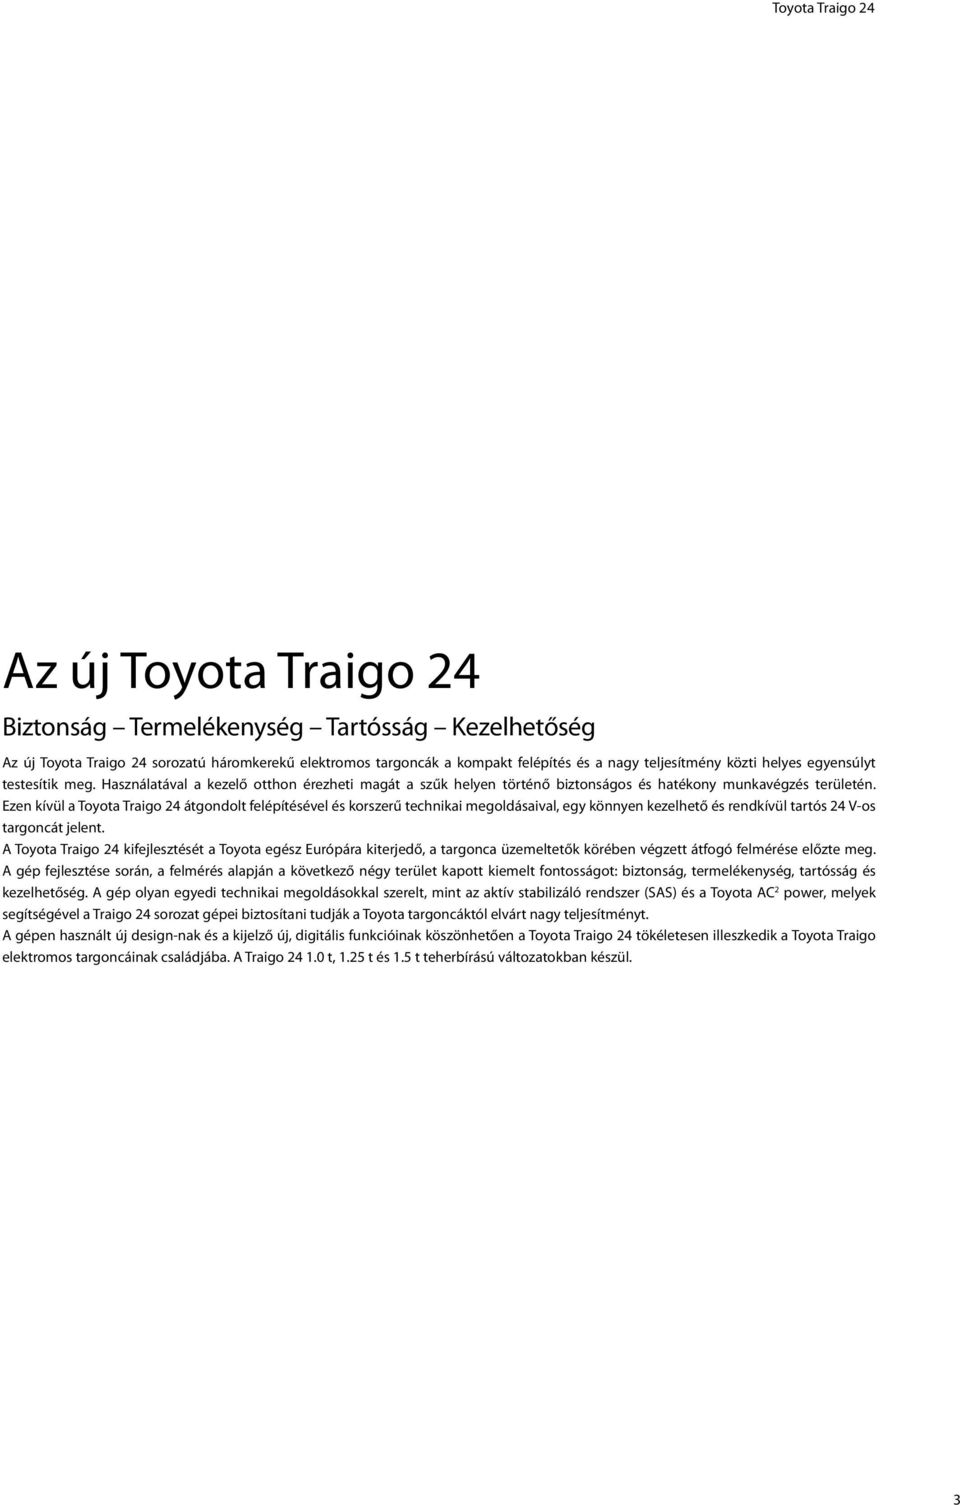 Ezen kívül a Toyota Traigo 24 átgondolt felépítésével és korszerű technikai megoldásaival, egy könnyen kezelhető és rendkívül tartós 24 V-os targoncát jelent.